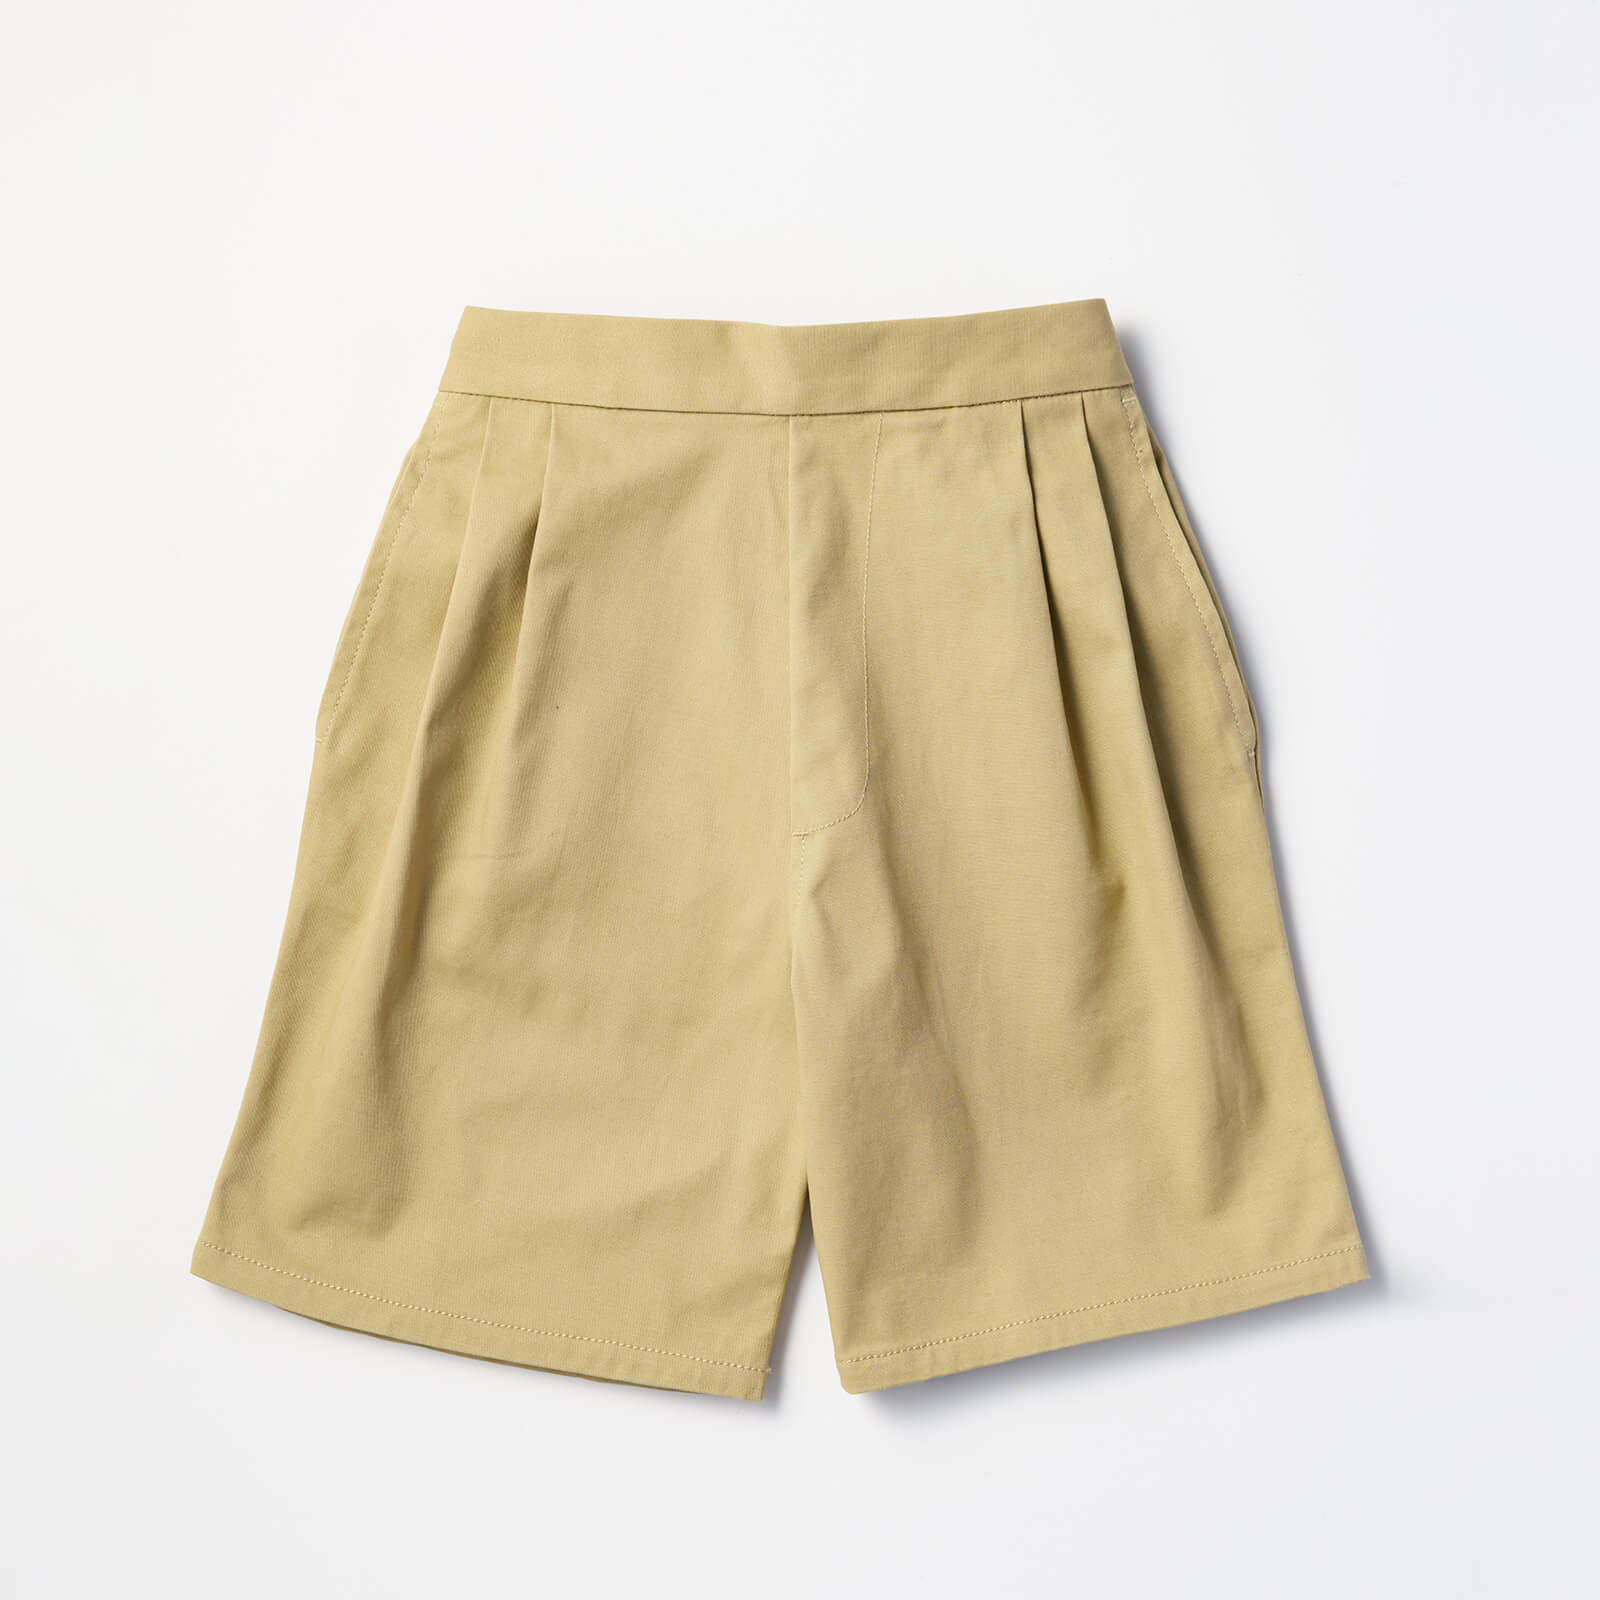 MARLMARL shorts 1 usuki ハーフパンツ